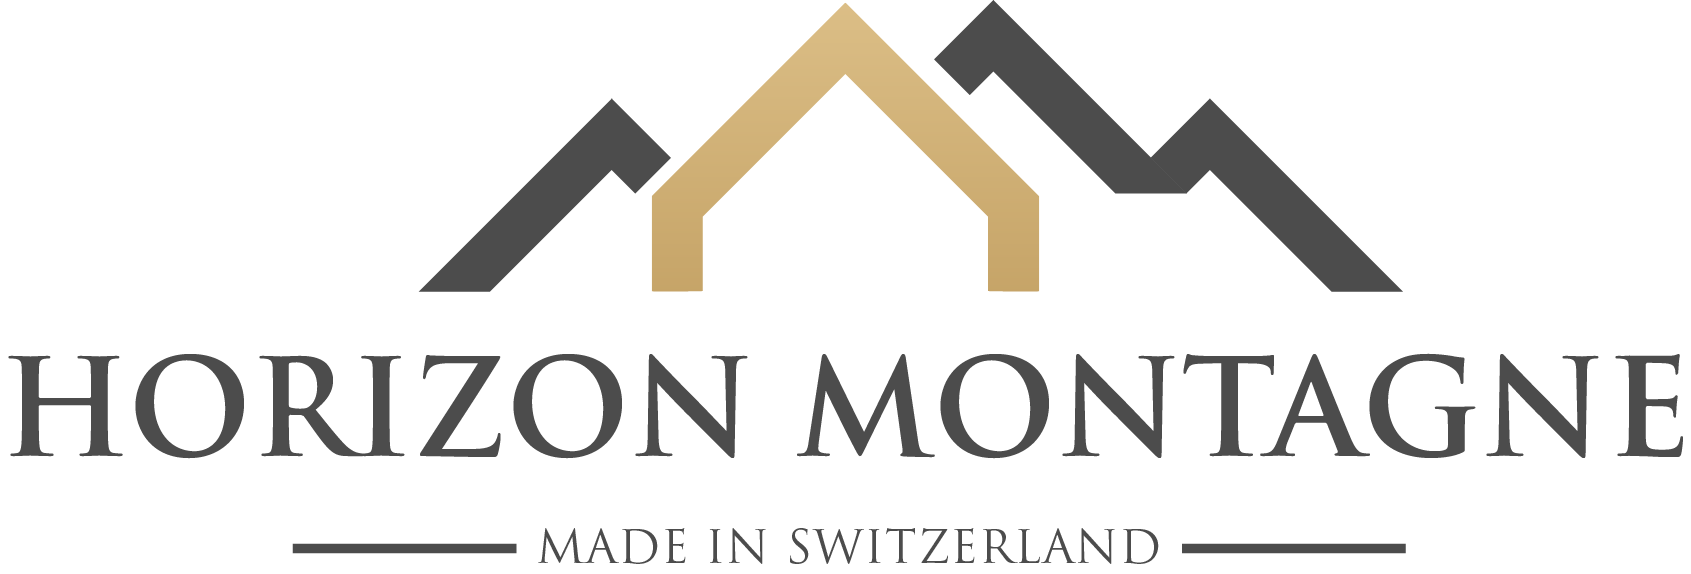 Horizon Montagne - Entreprise de construction, transformation et rénovation Suisse